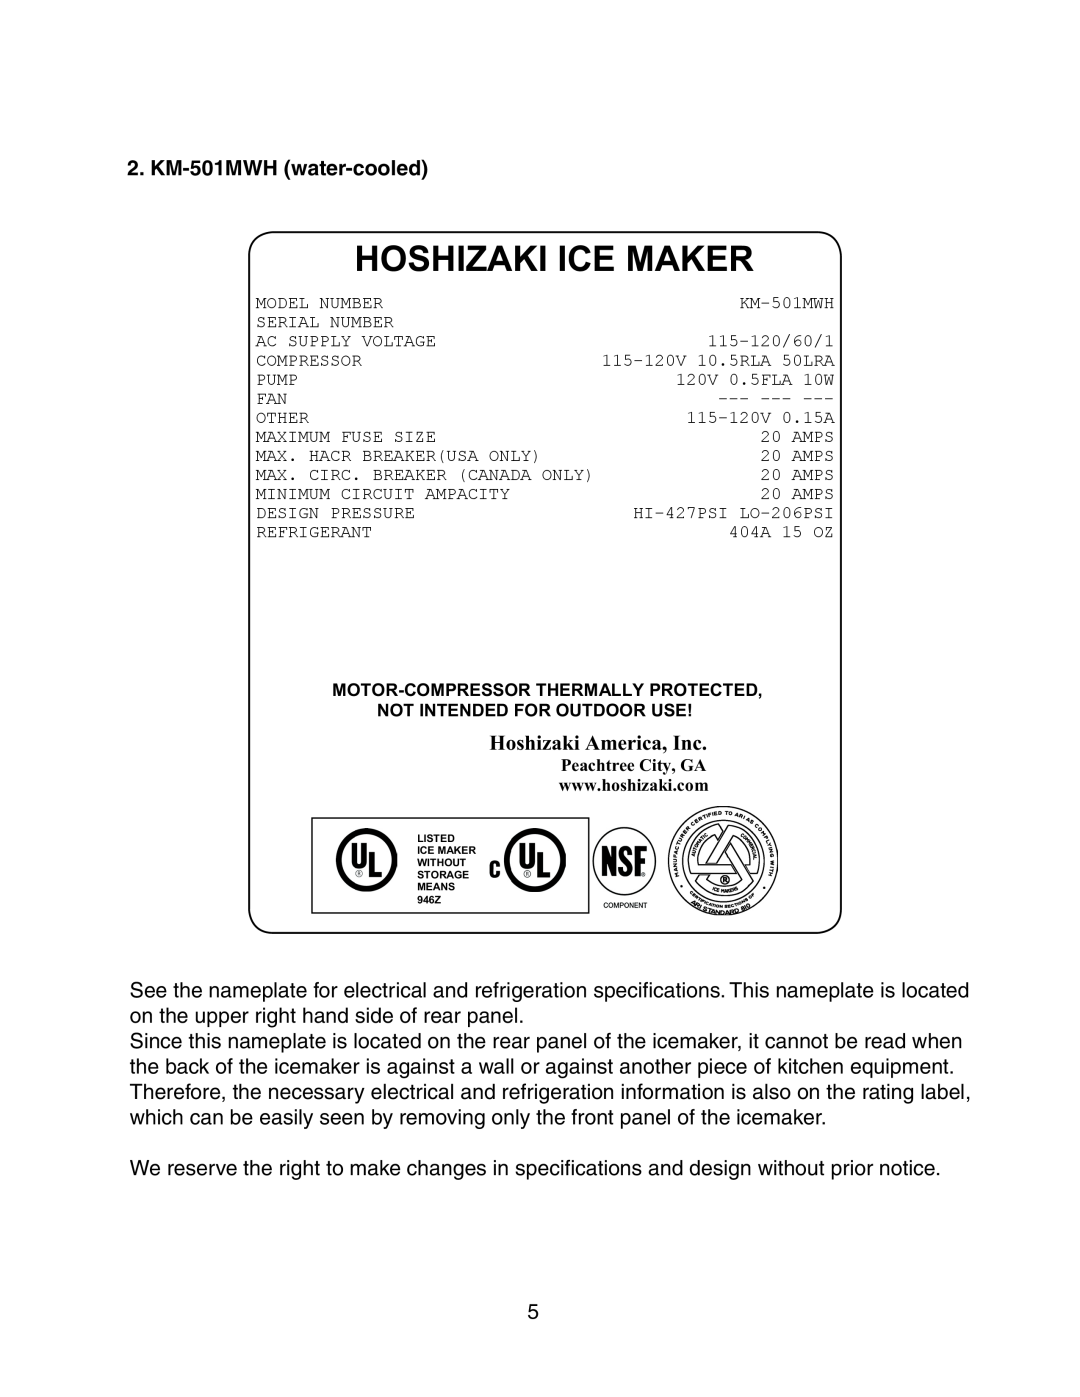 Hoshizaki KM-501MRH instruction manual KM-501MWH water-cooled, Hoshizaki Ice Maker, Hoshizaki America, Inc 